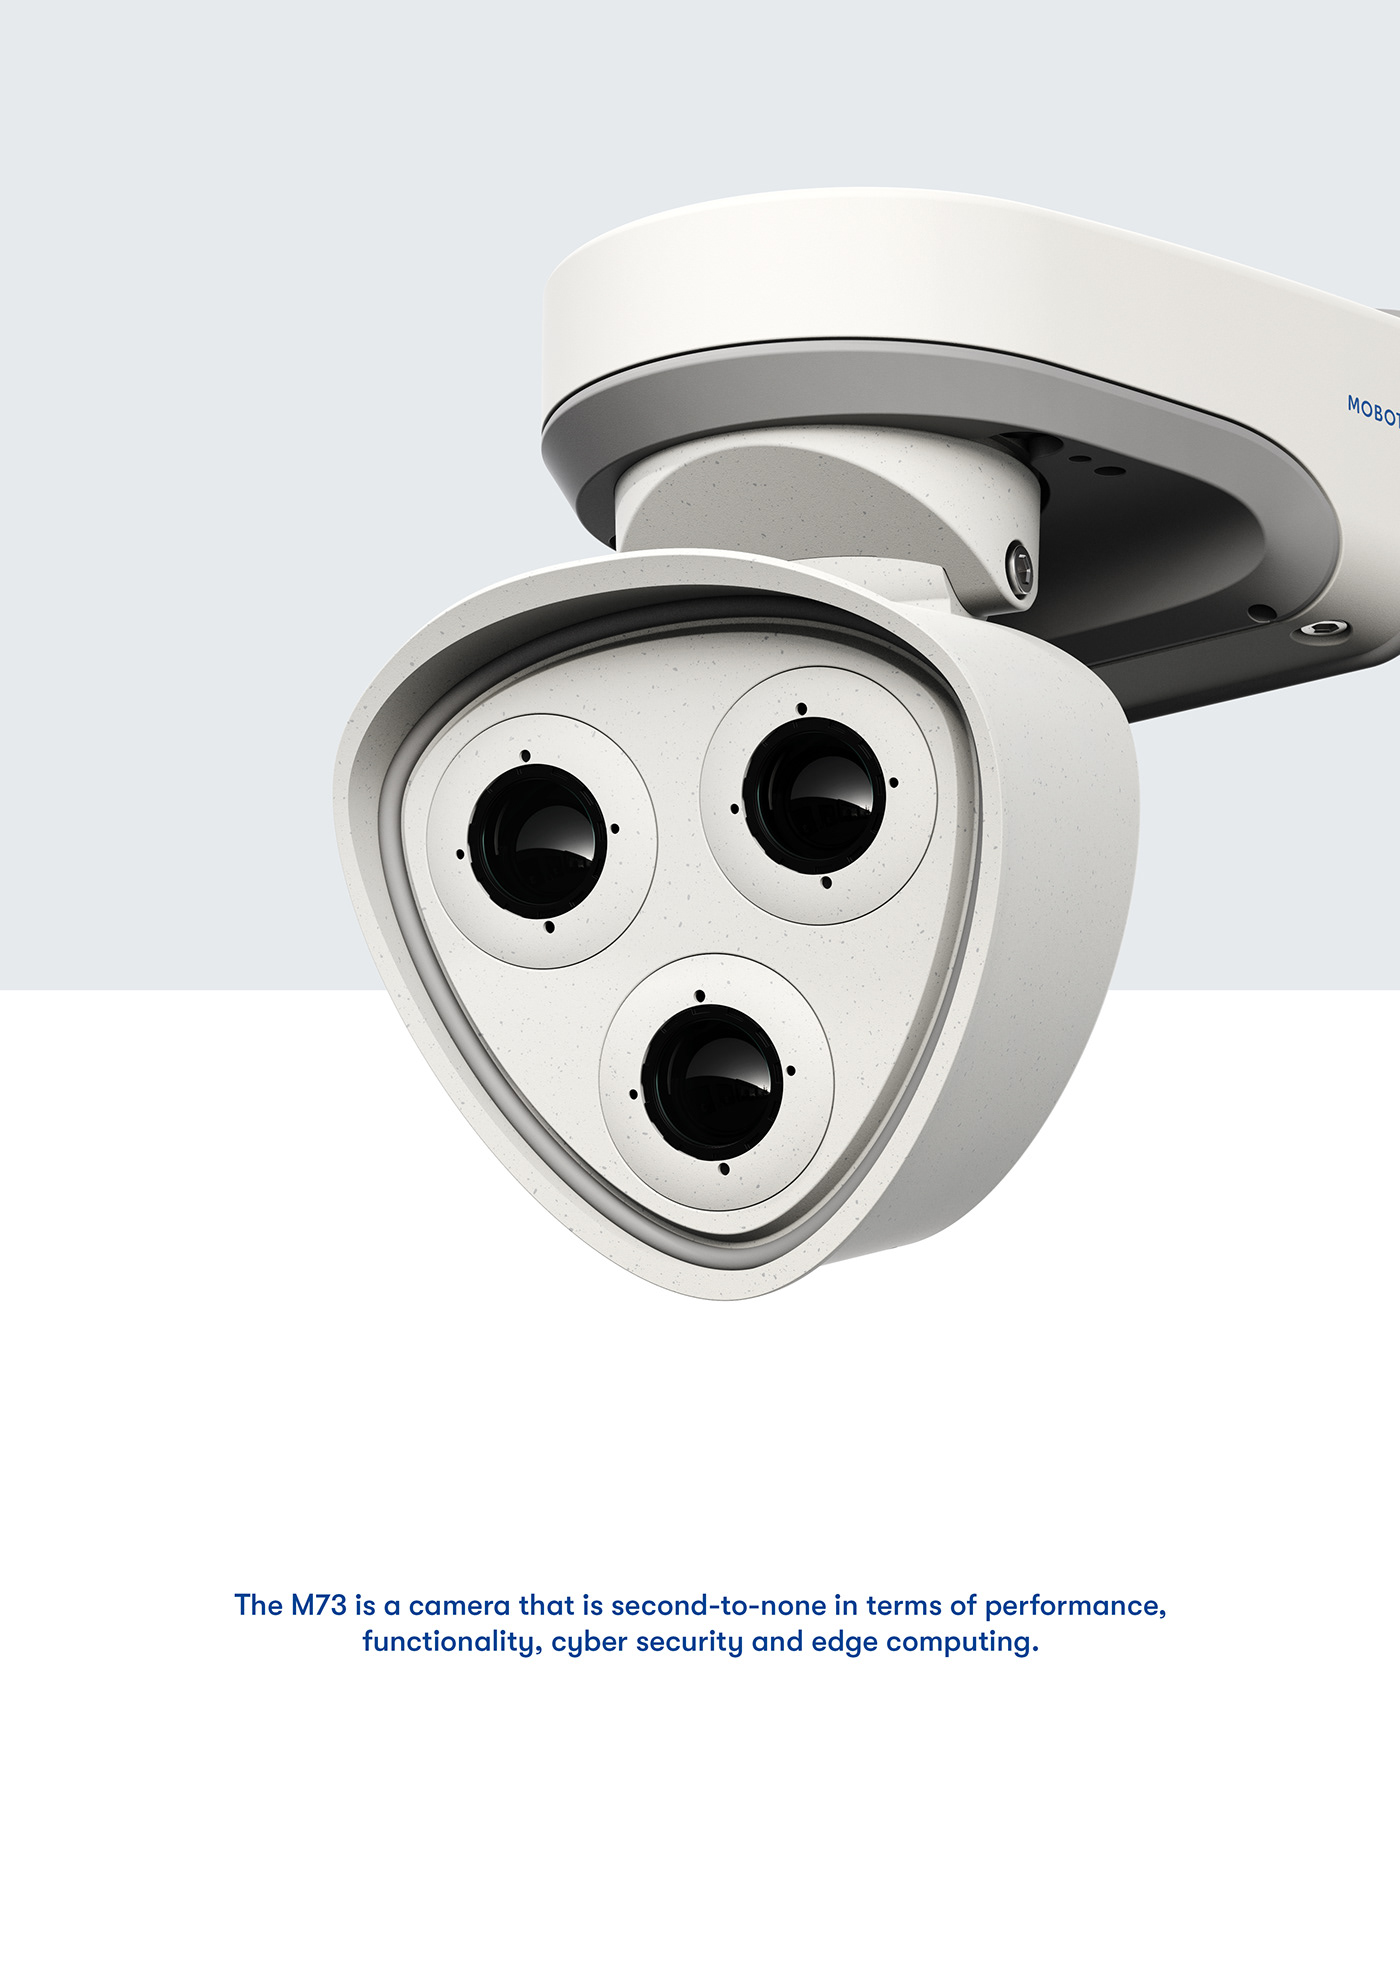 eskild hansen design industrial design  security camera product design  mobotix